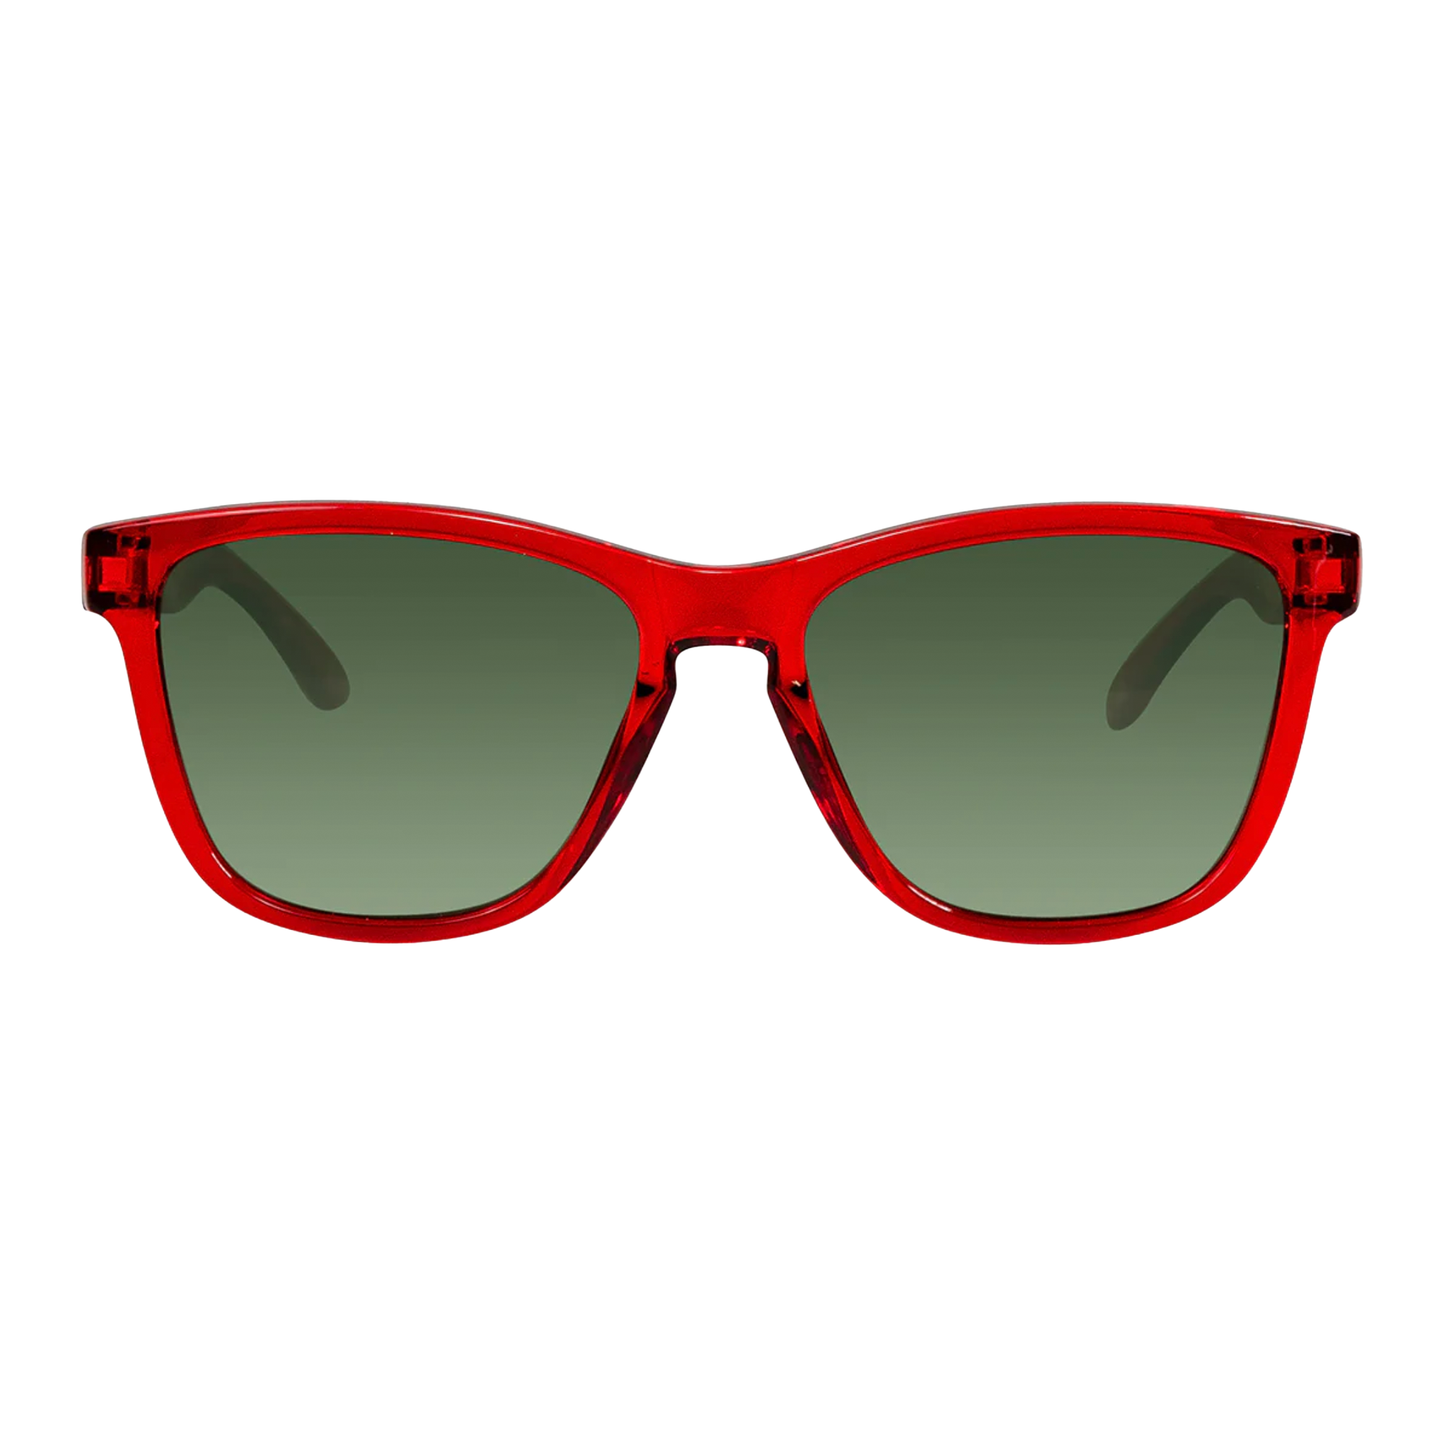 Cassette Easy Livin' [X] Sunglasses - Ruby Red / Polarized G15 Lens